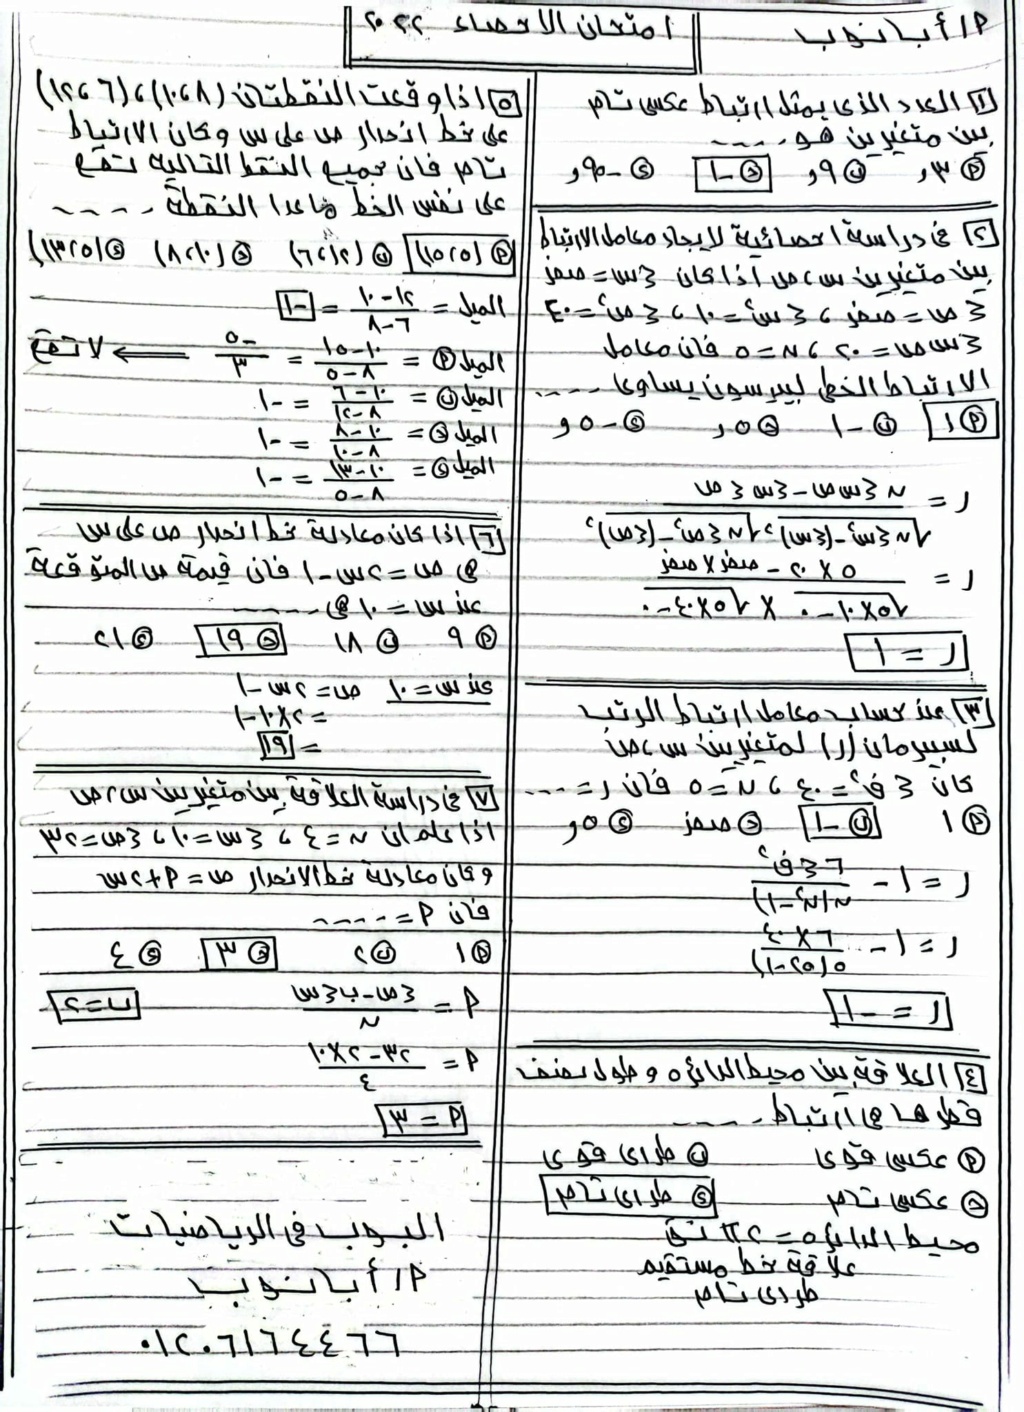 امتحان إحصاء متوقع بنظام البوكلت للثانوية العامة - ملحق الجمهورية التعليمي 3113